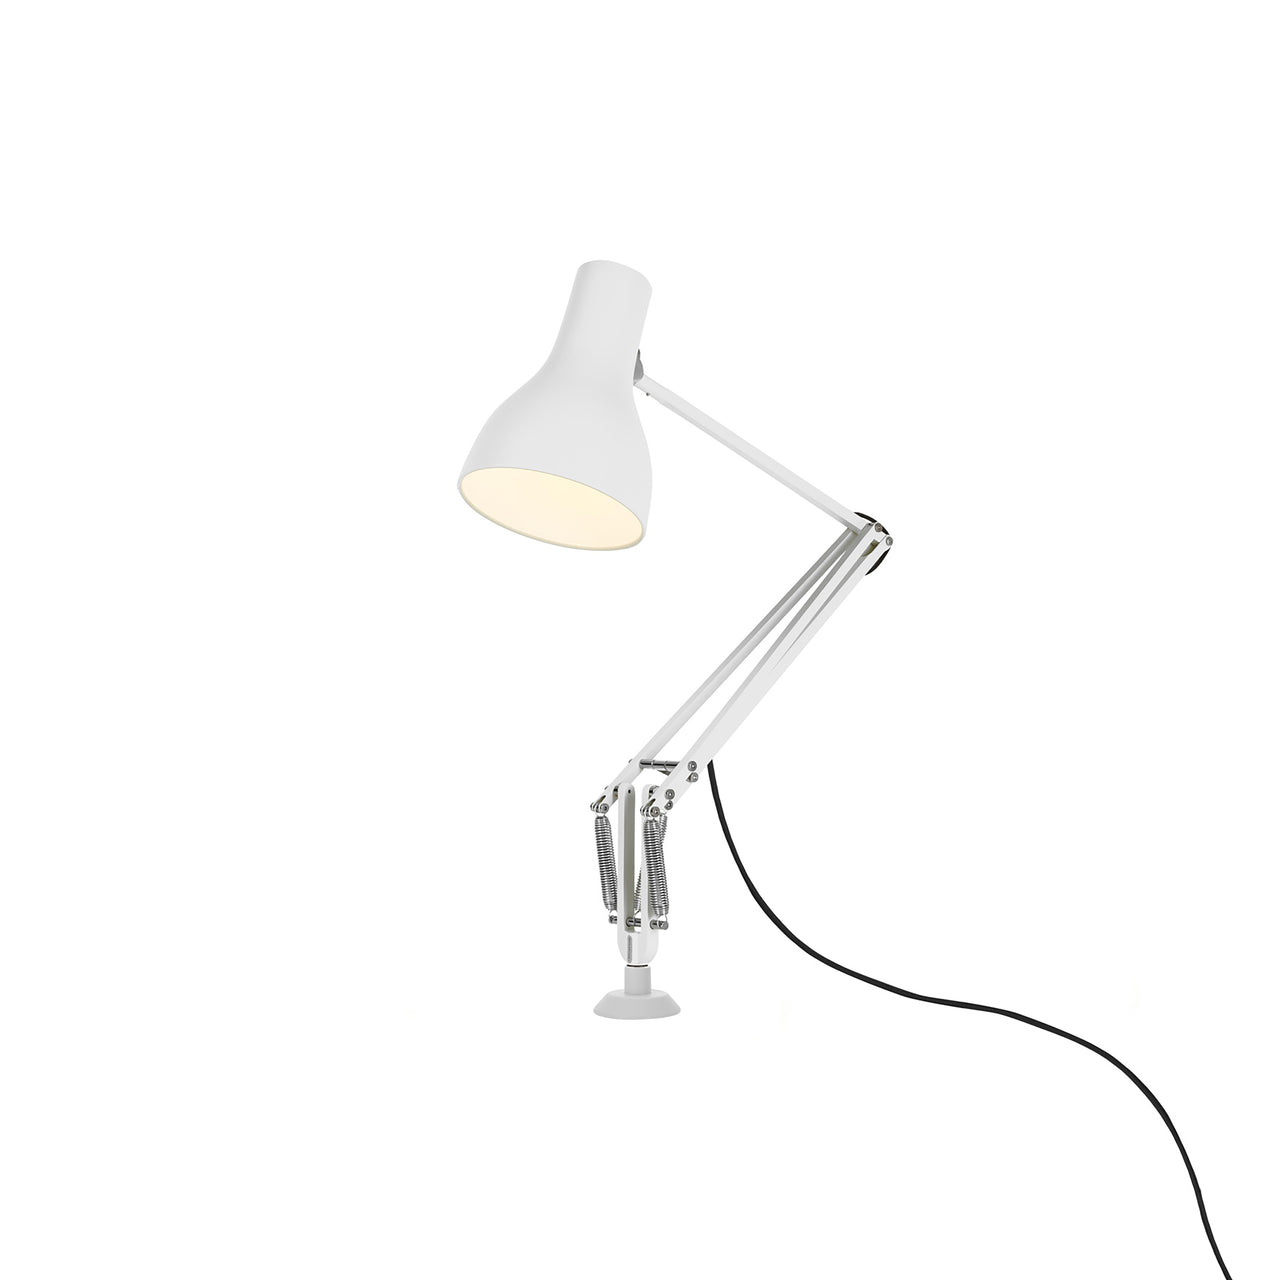 Type 75 Desk Insert Lamp: Alpine White